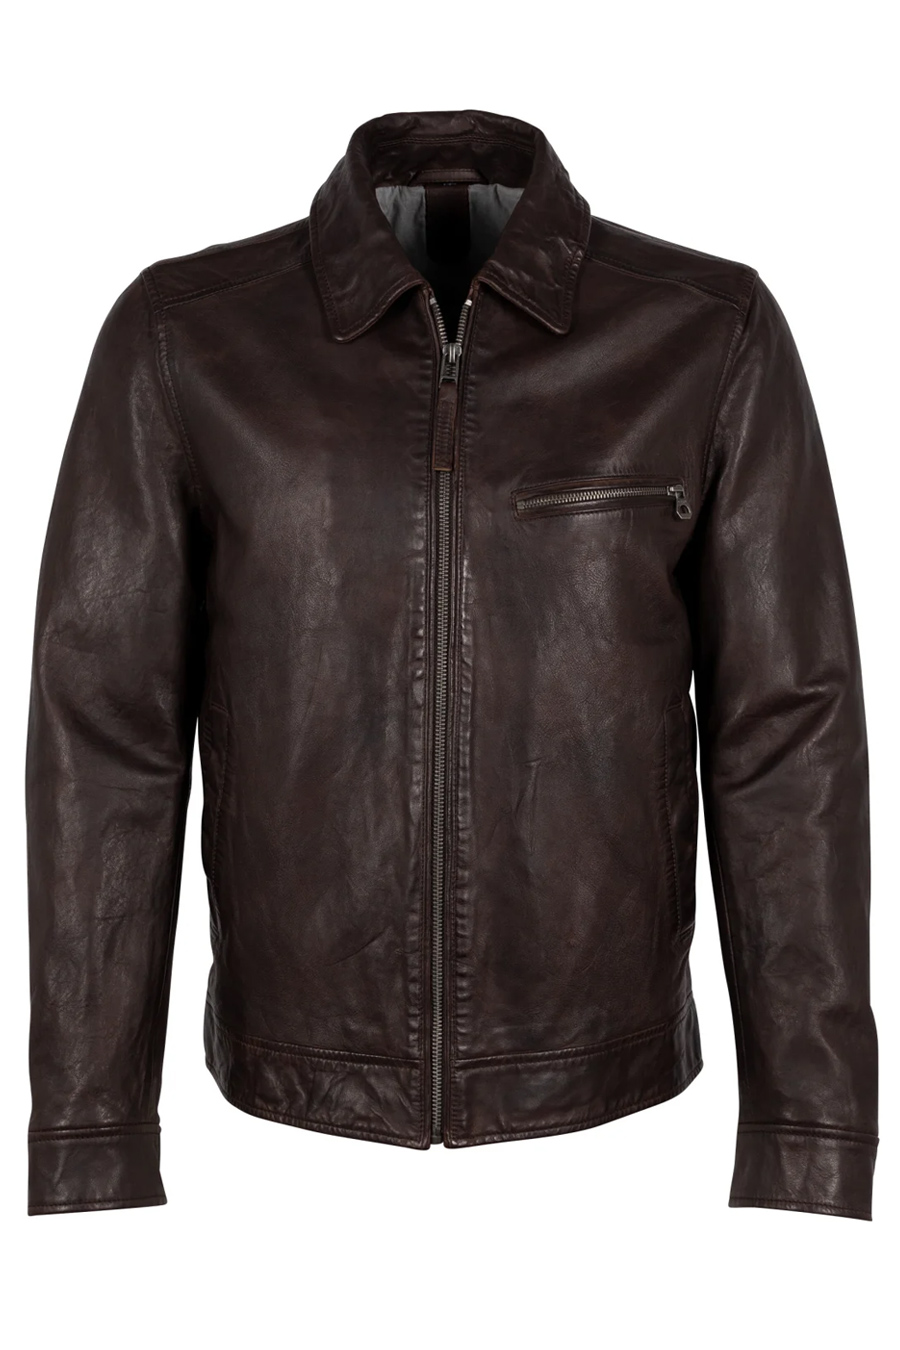 Leather jacket GIPSY 1201-0492-chestnut